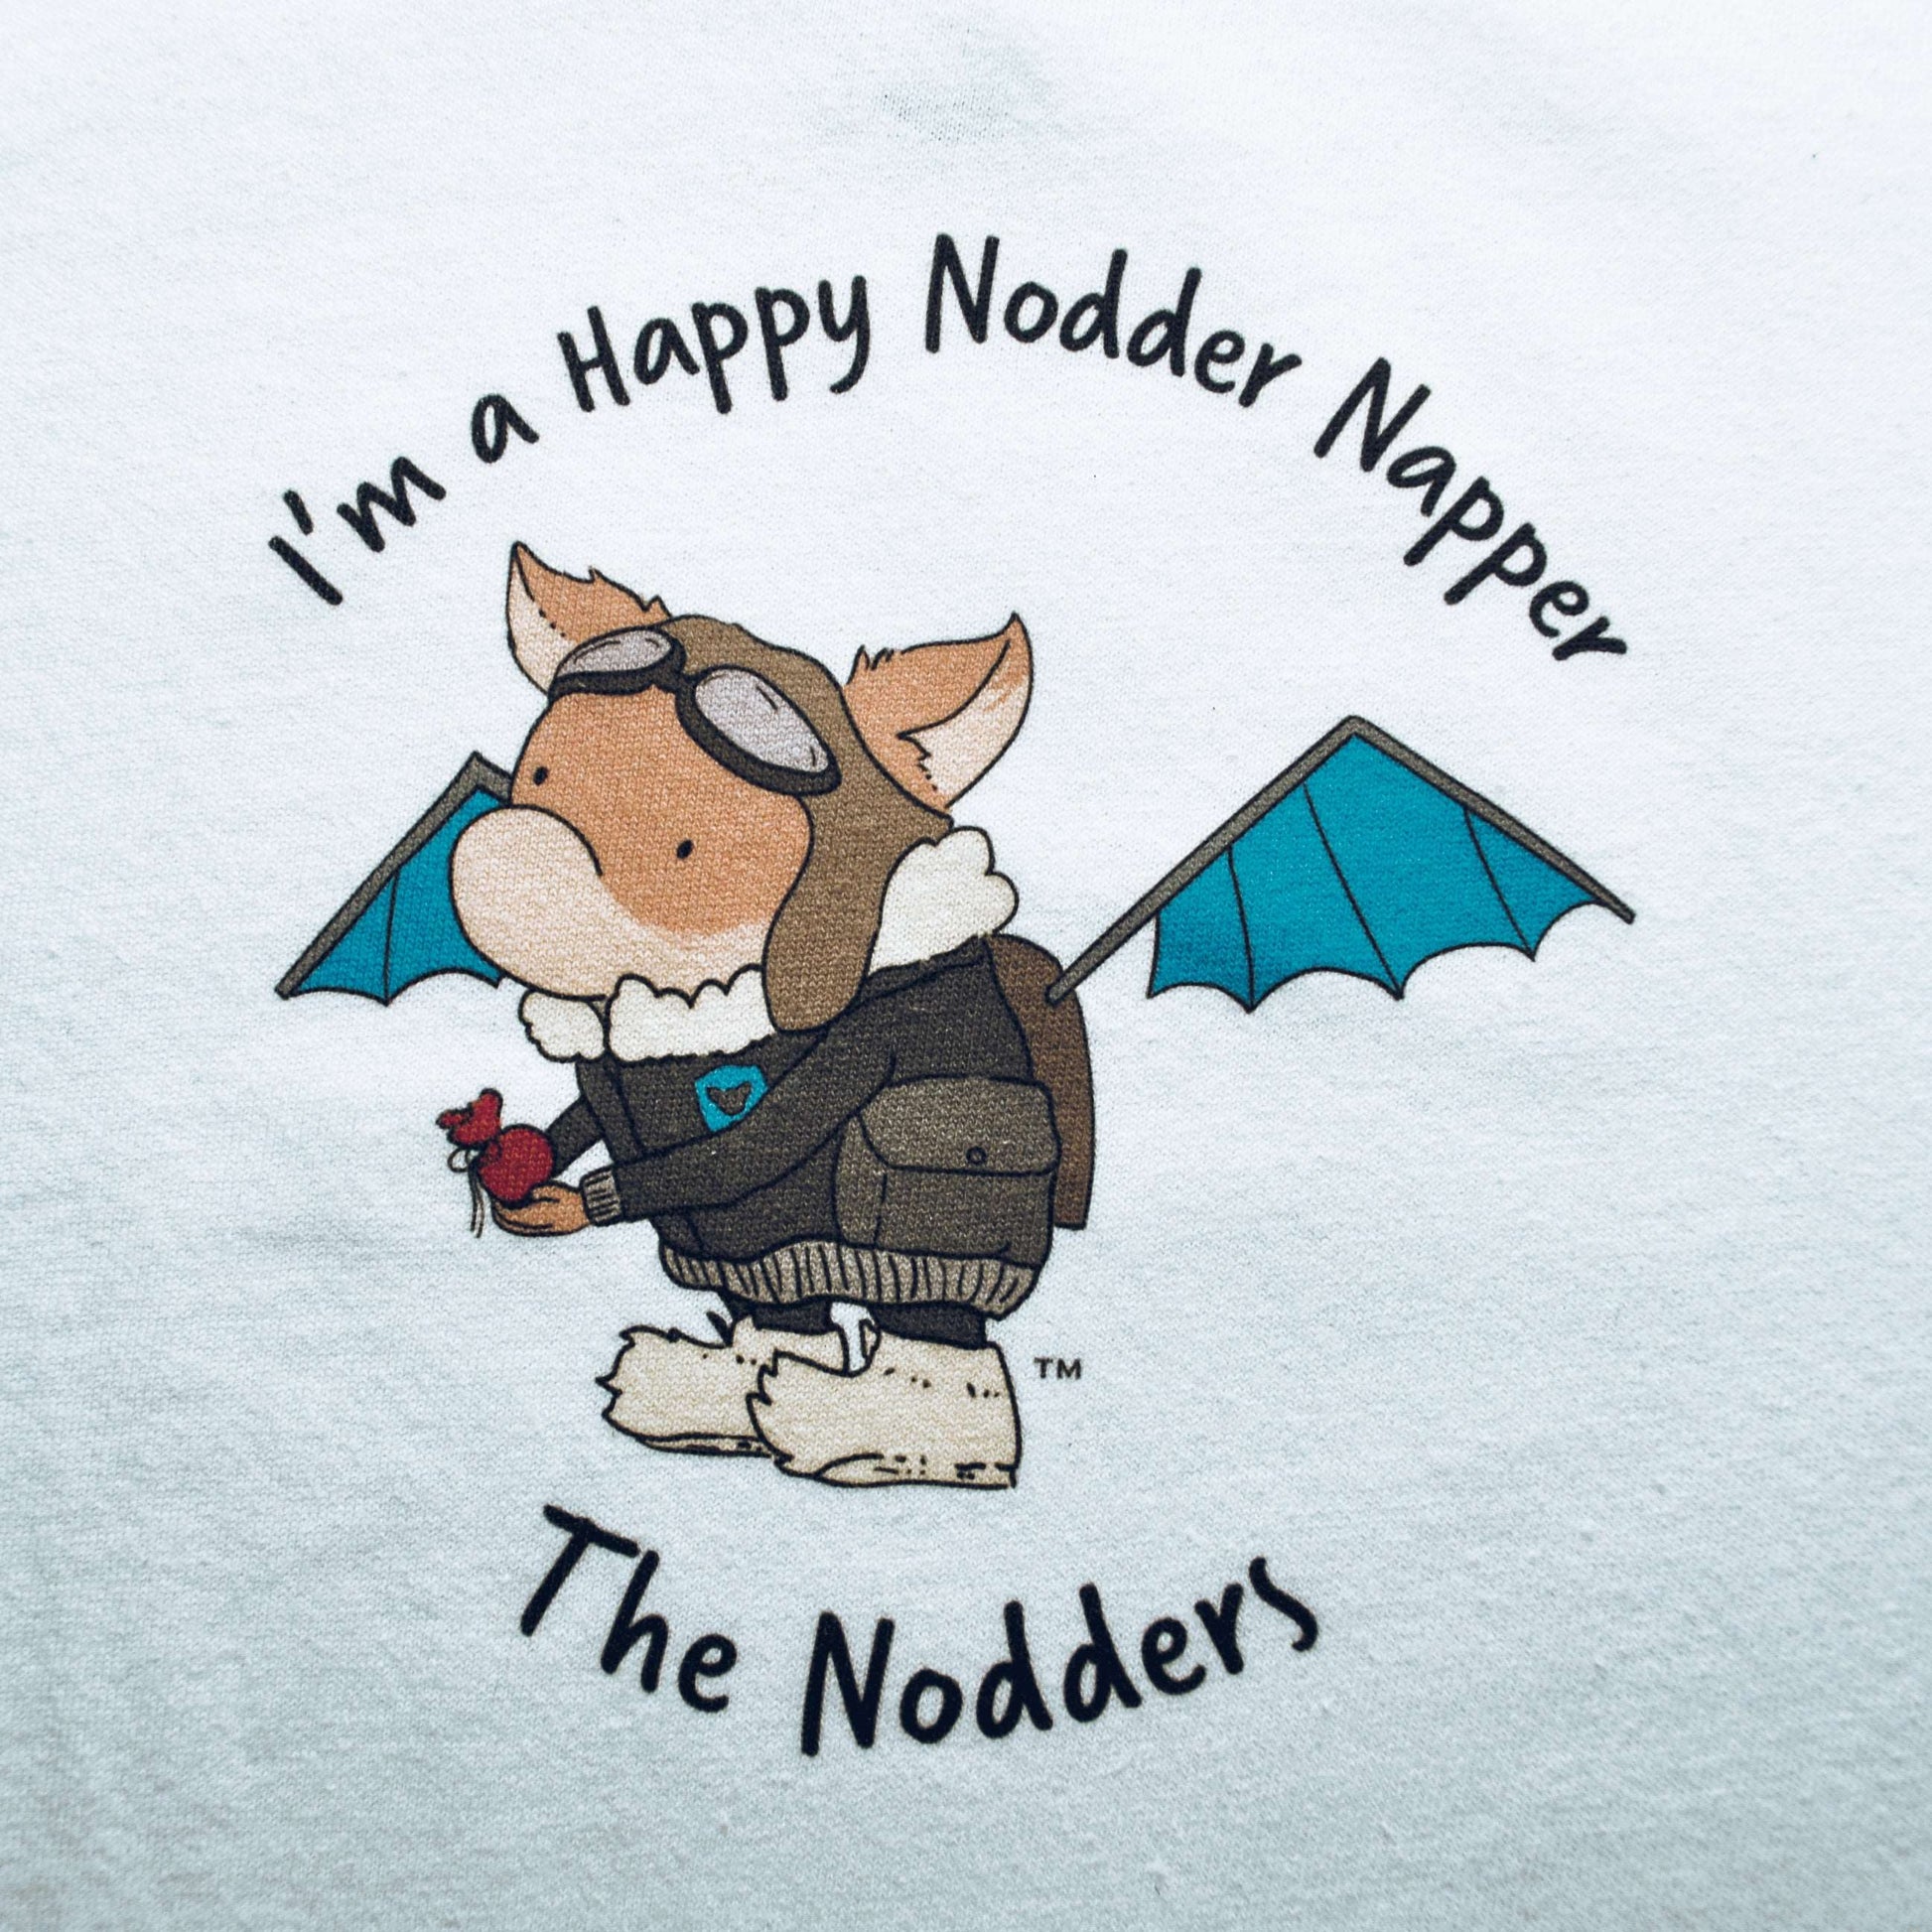 Nodder Napper T-Shirt